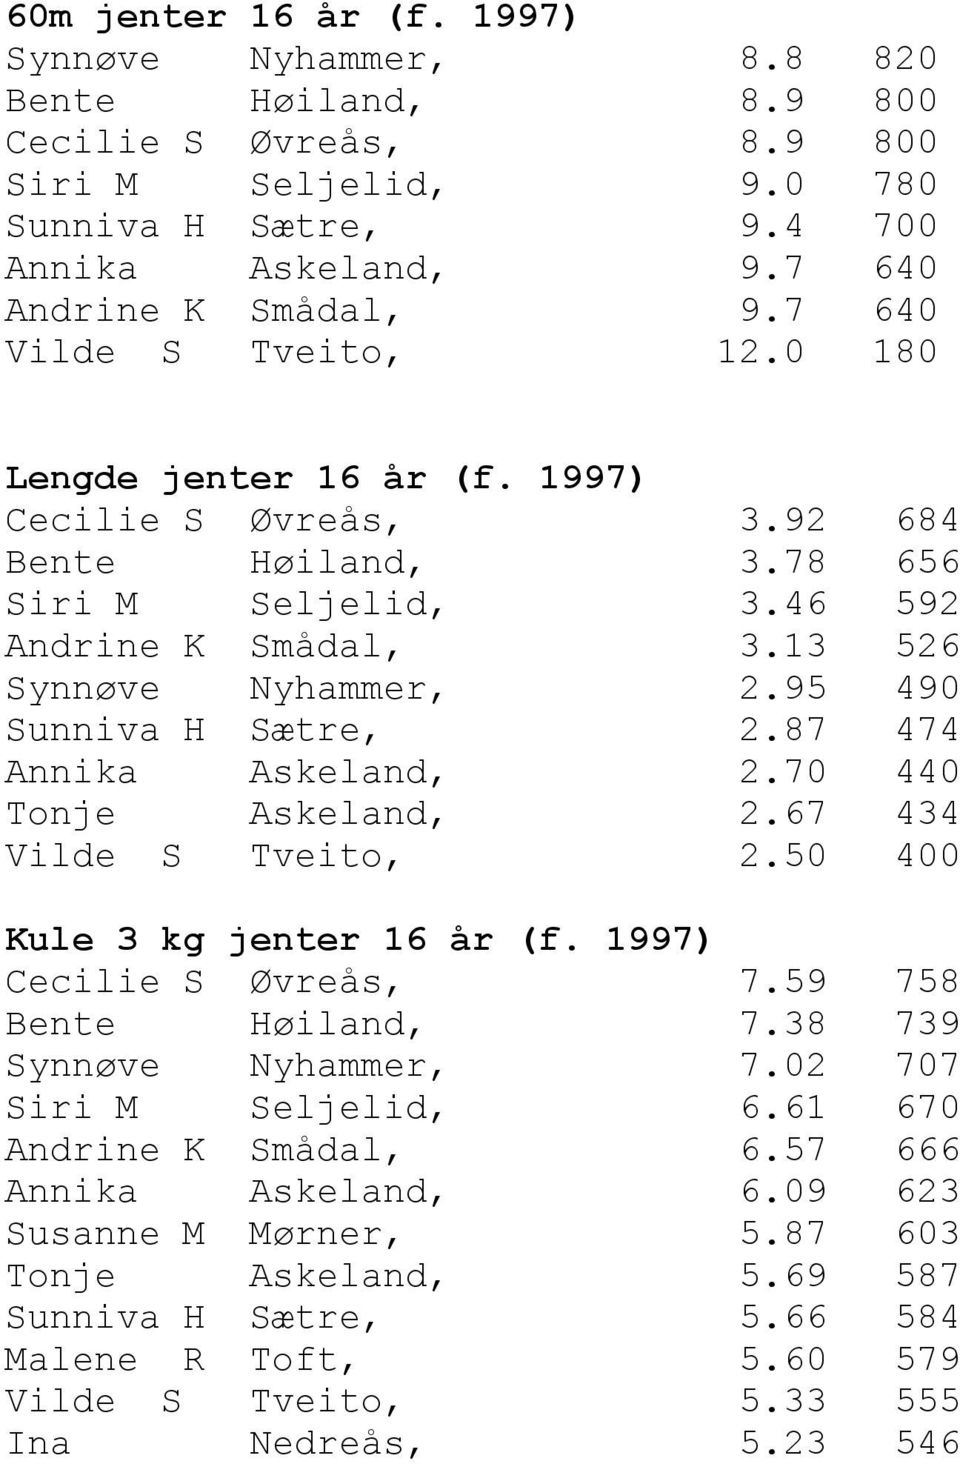 95 490 Sunniva H Sætre, 2.87 474 Annika Askeland, 2.70 440 Tonje Askeland, 2.67 434 Vilde S Tveito, 2.50 400 Kule 3 kg jenter 16 år (f. 1997) Cecilie S Øvreås, 7.59 758 Bente Høiland, 7.